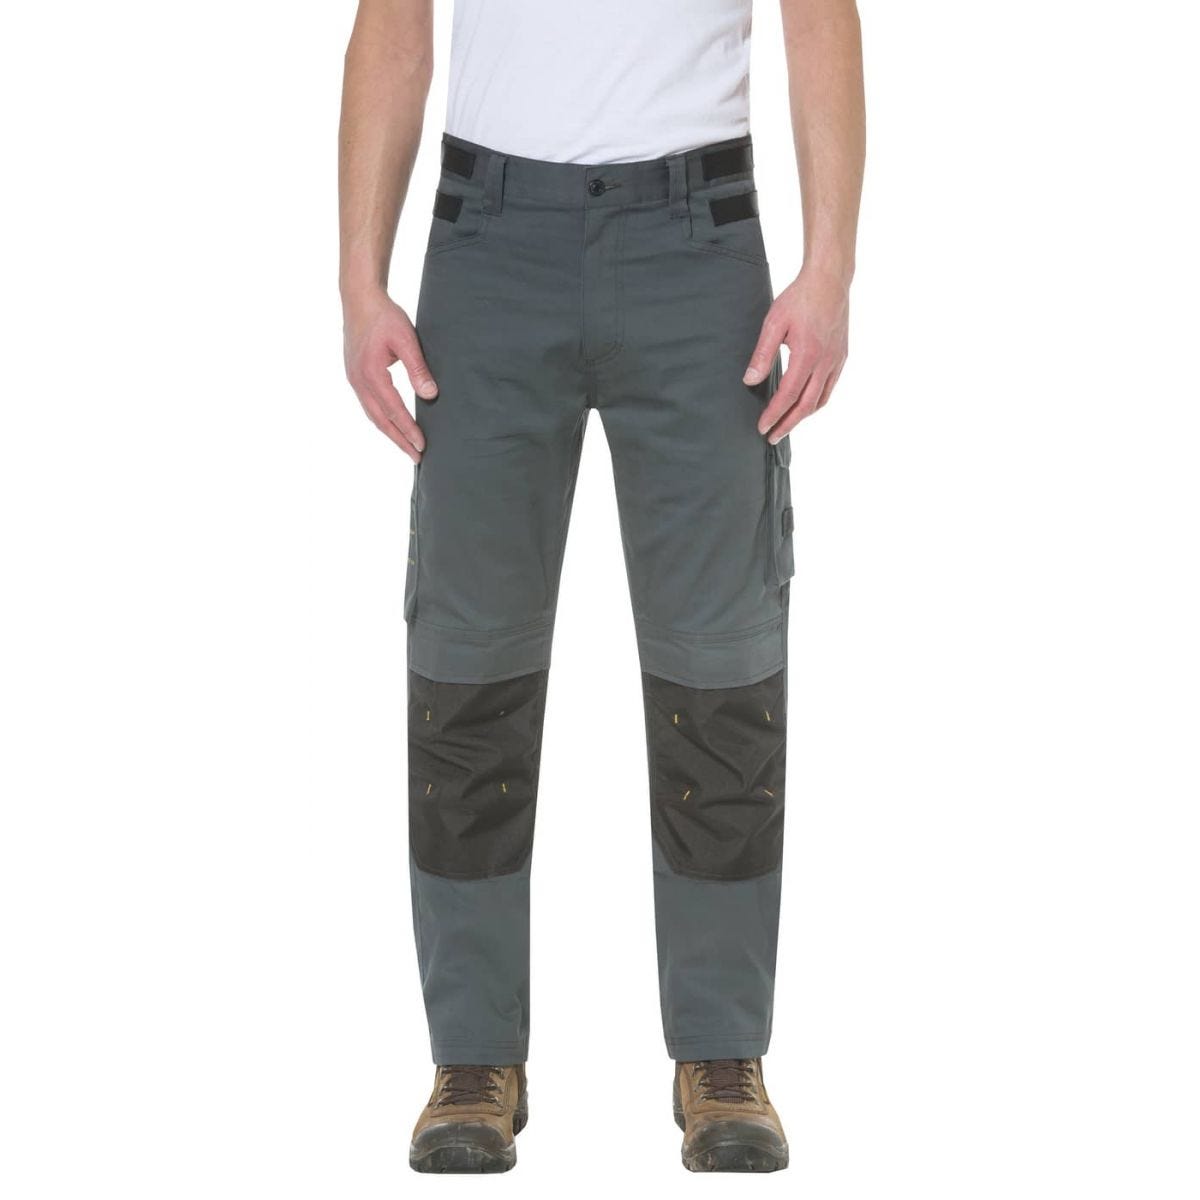 Pantalon de travail Custom Lite Gris et Noir - Caterpillar - Taille 48 0